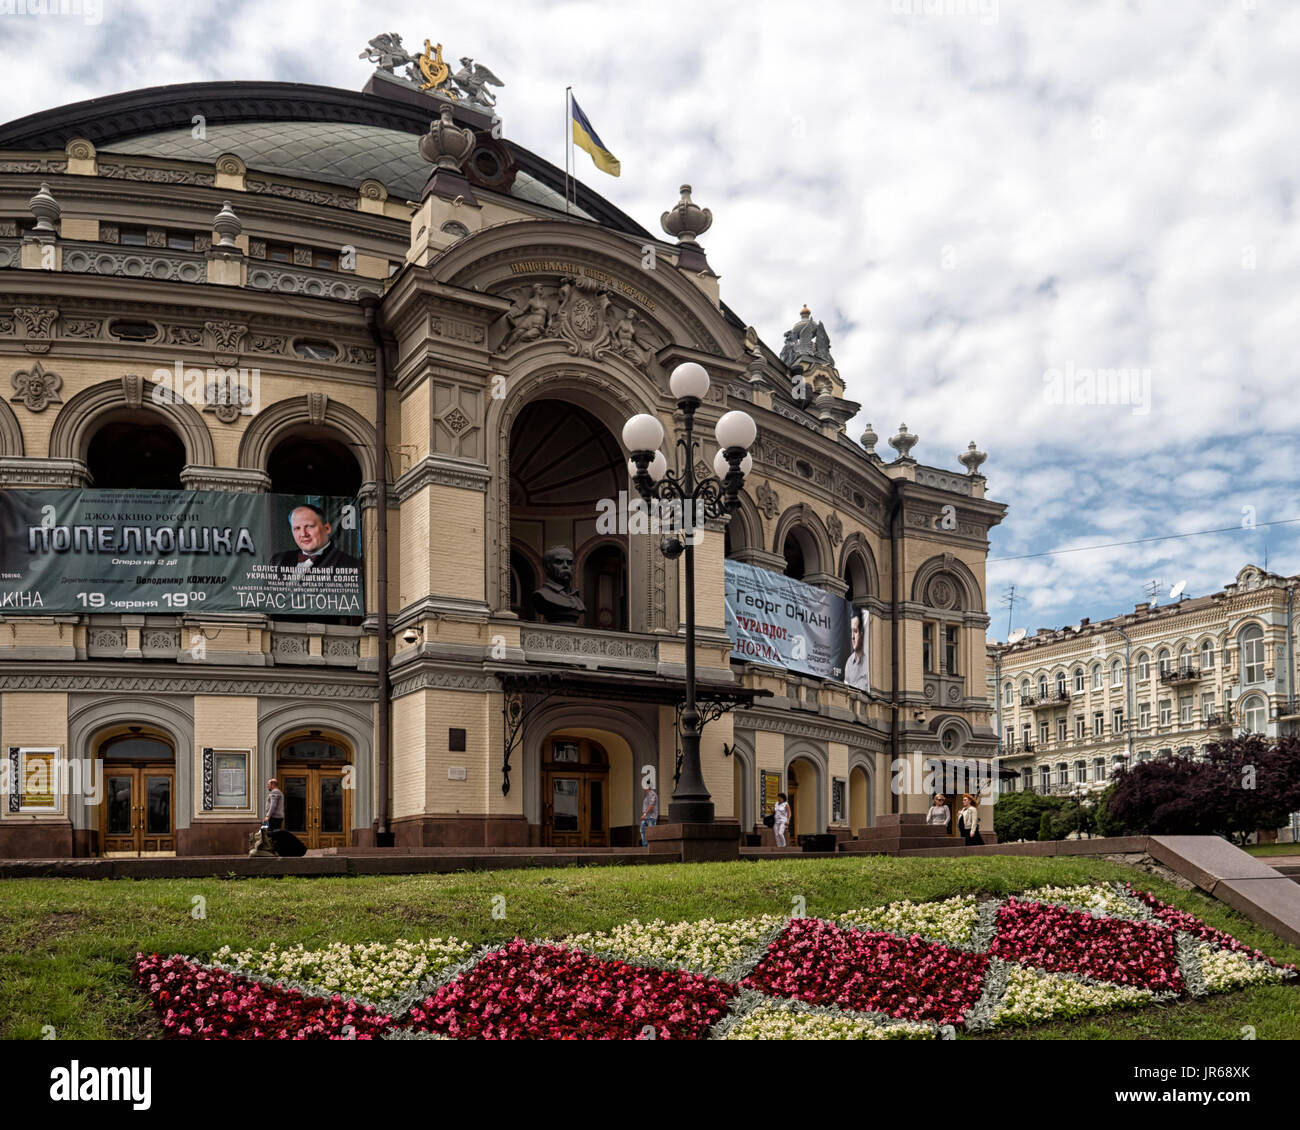 KIEV, UKRAINE - 12 JUIN 2016 : vue extérieure du bâtiment de l'Opéra national ukrainien de Taras Shevchenko Banque D'Images